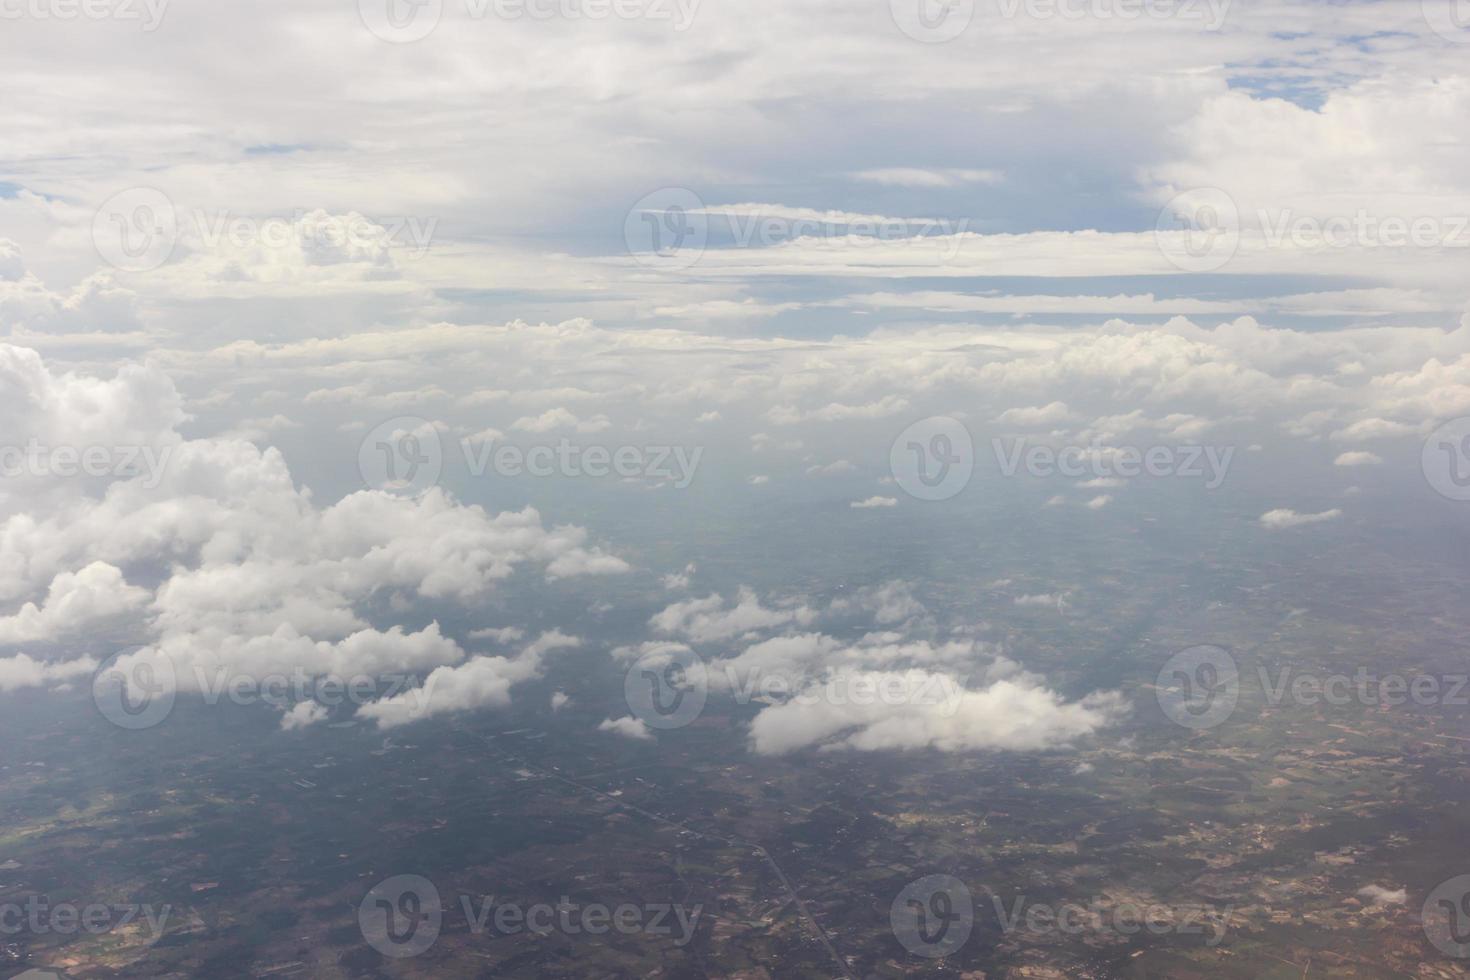 blå himmel med moln på flygplanet foto